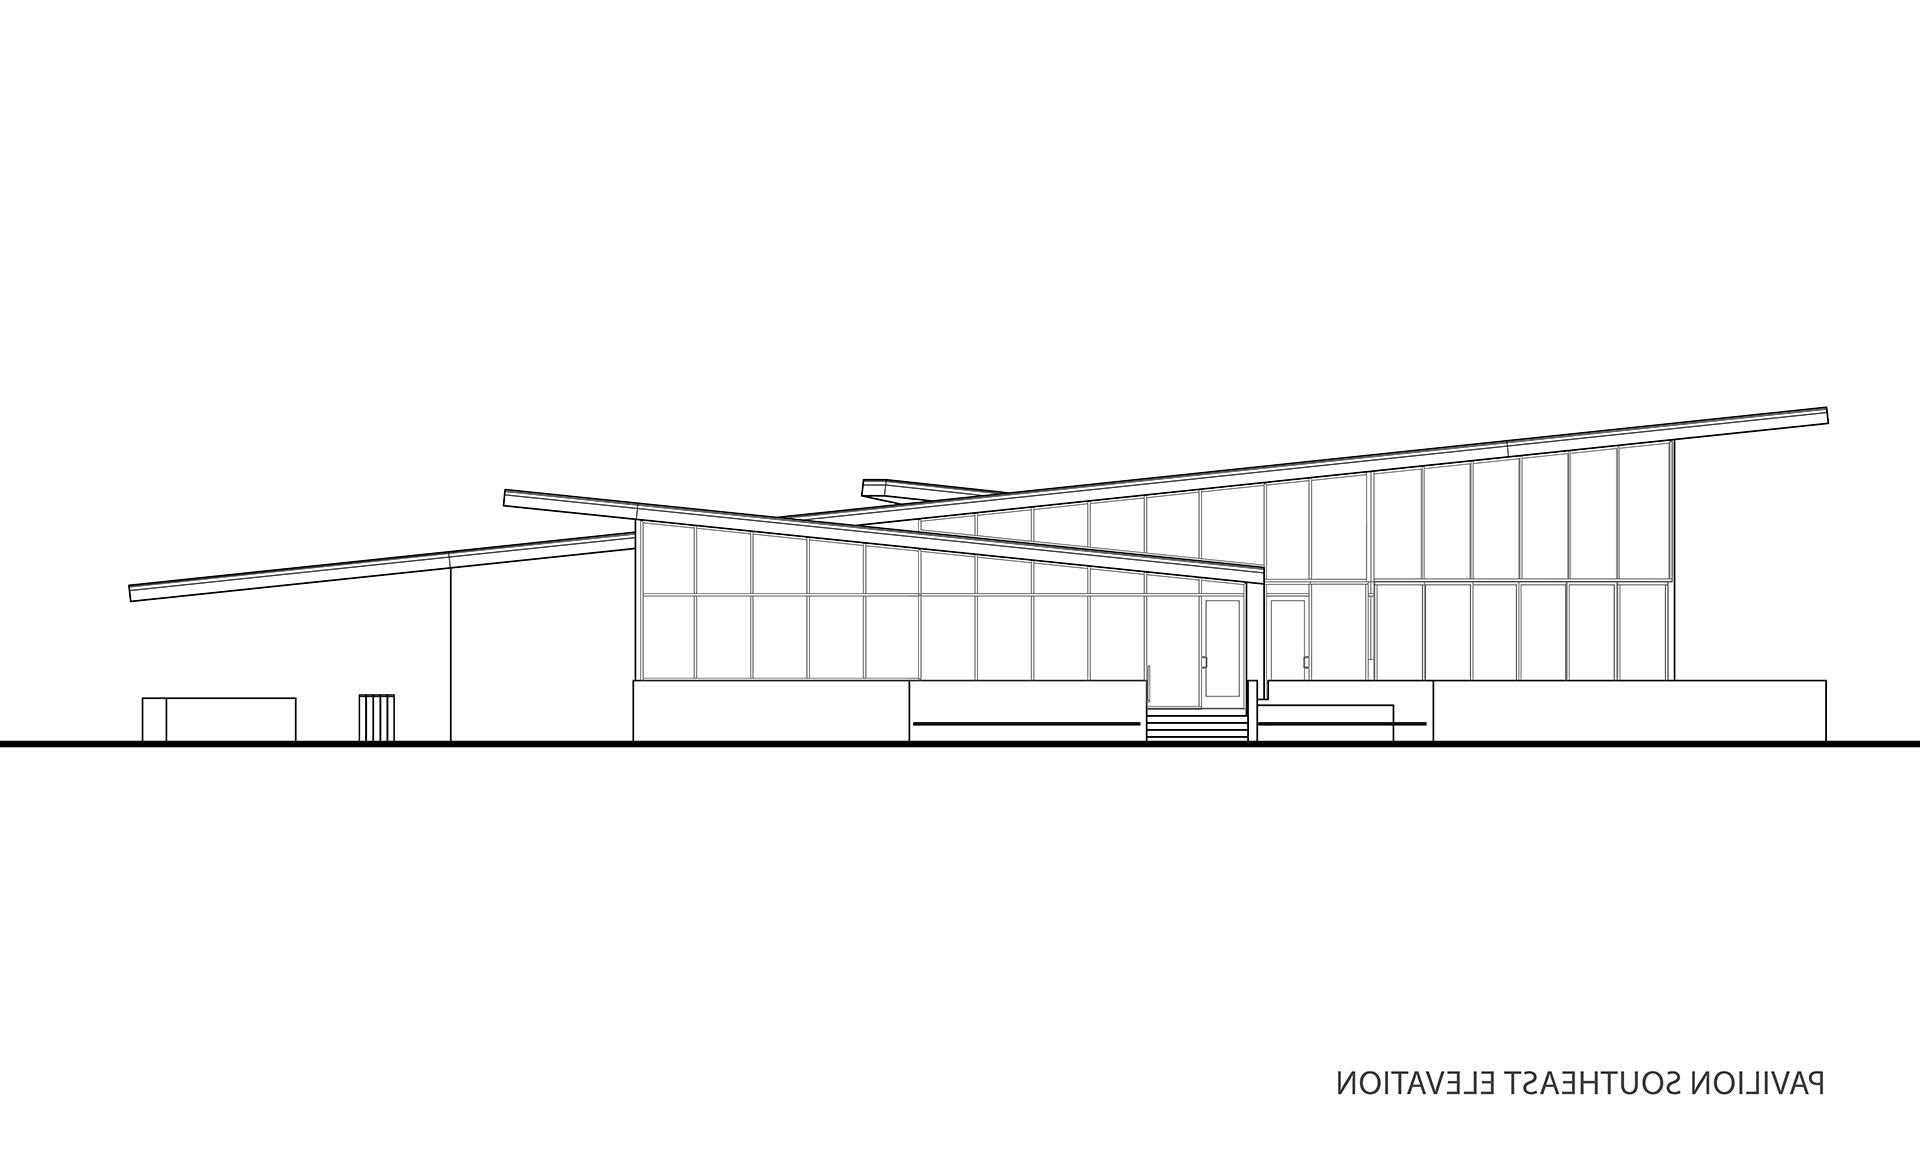 Tennis Pavilion plans